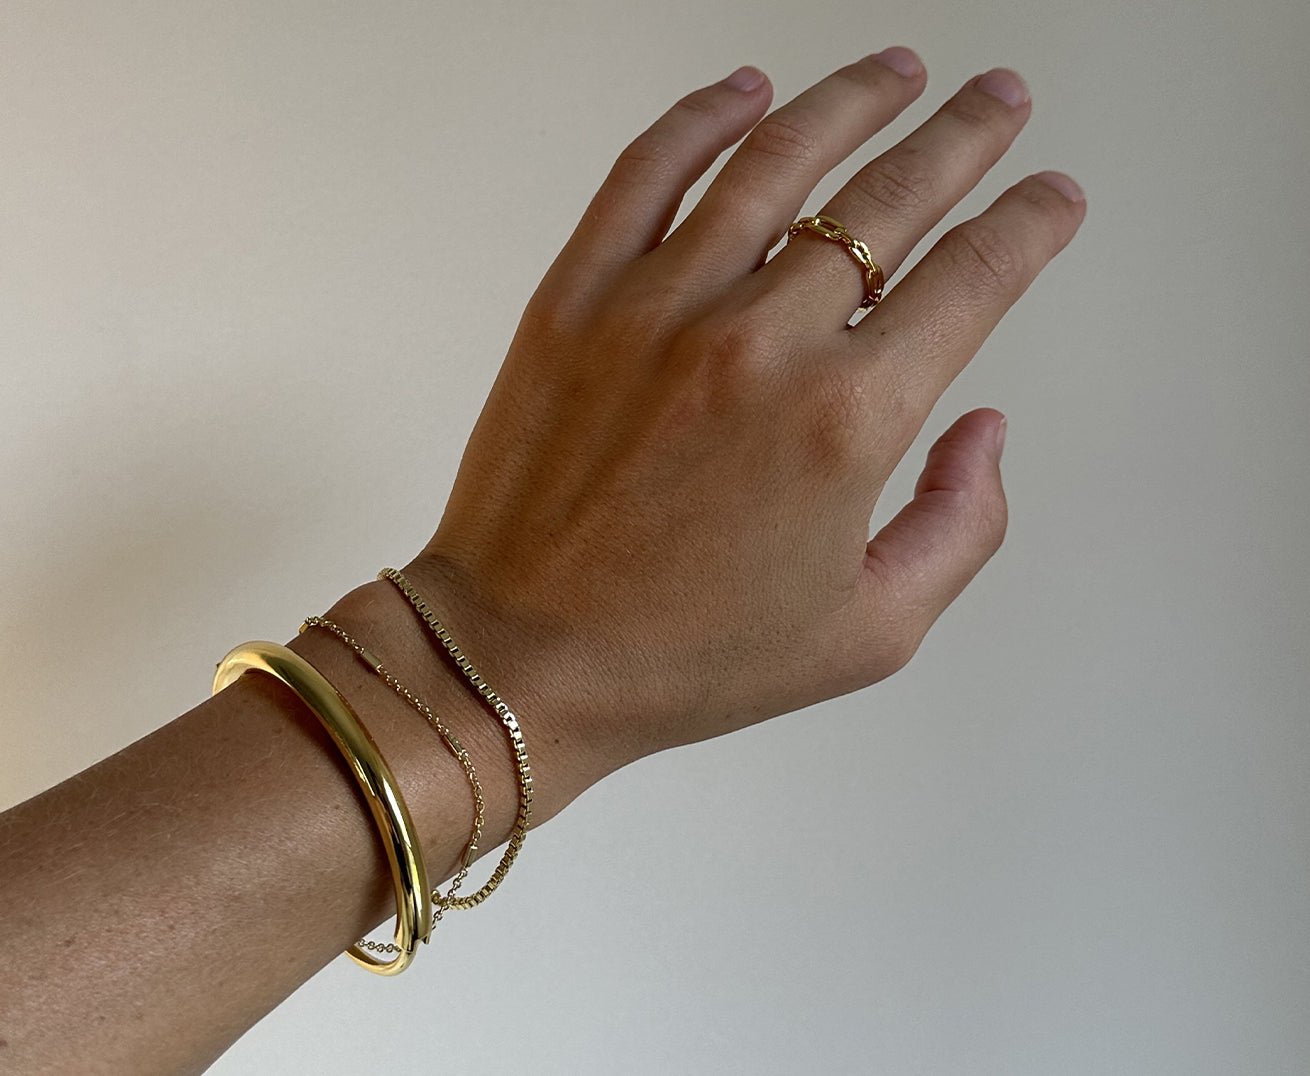 @ashleyellenhoward wearing gold plated bracelets